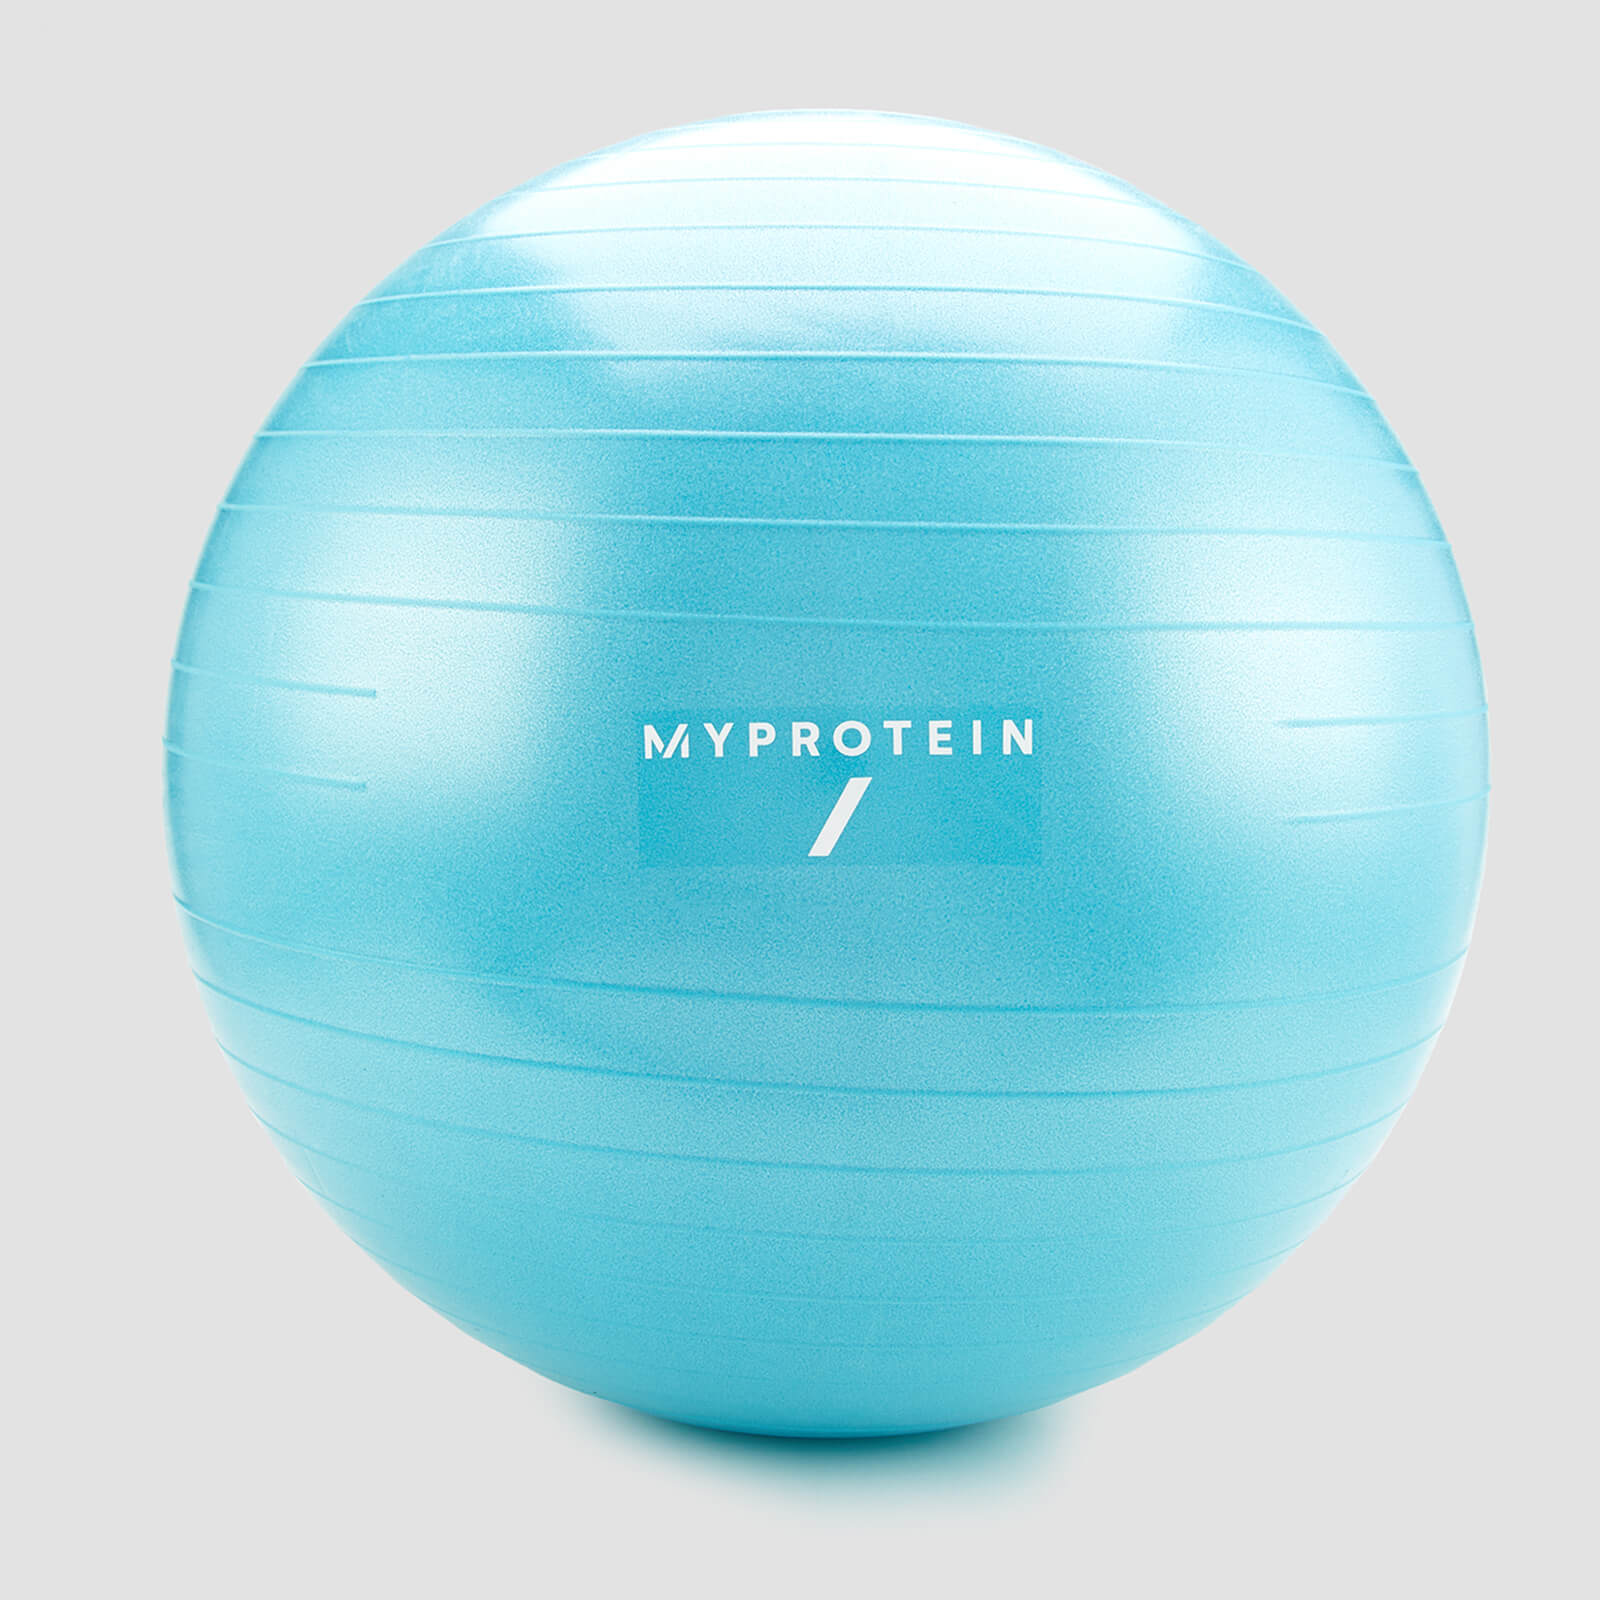 MyProtein Exercise Ball und Pumpe — Blau